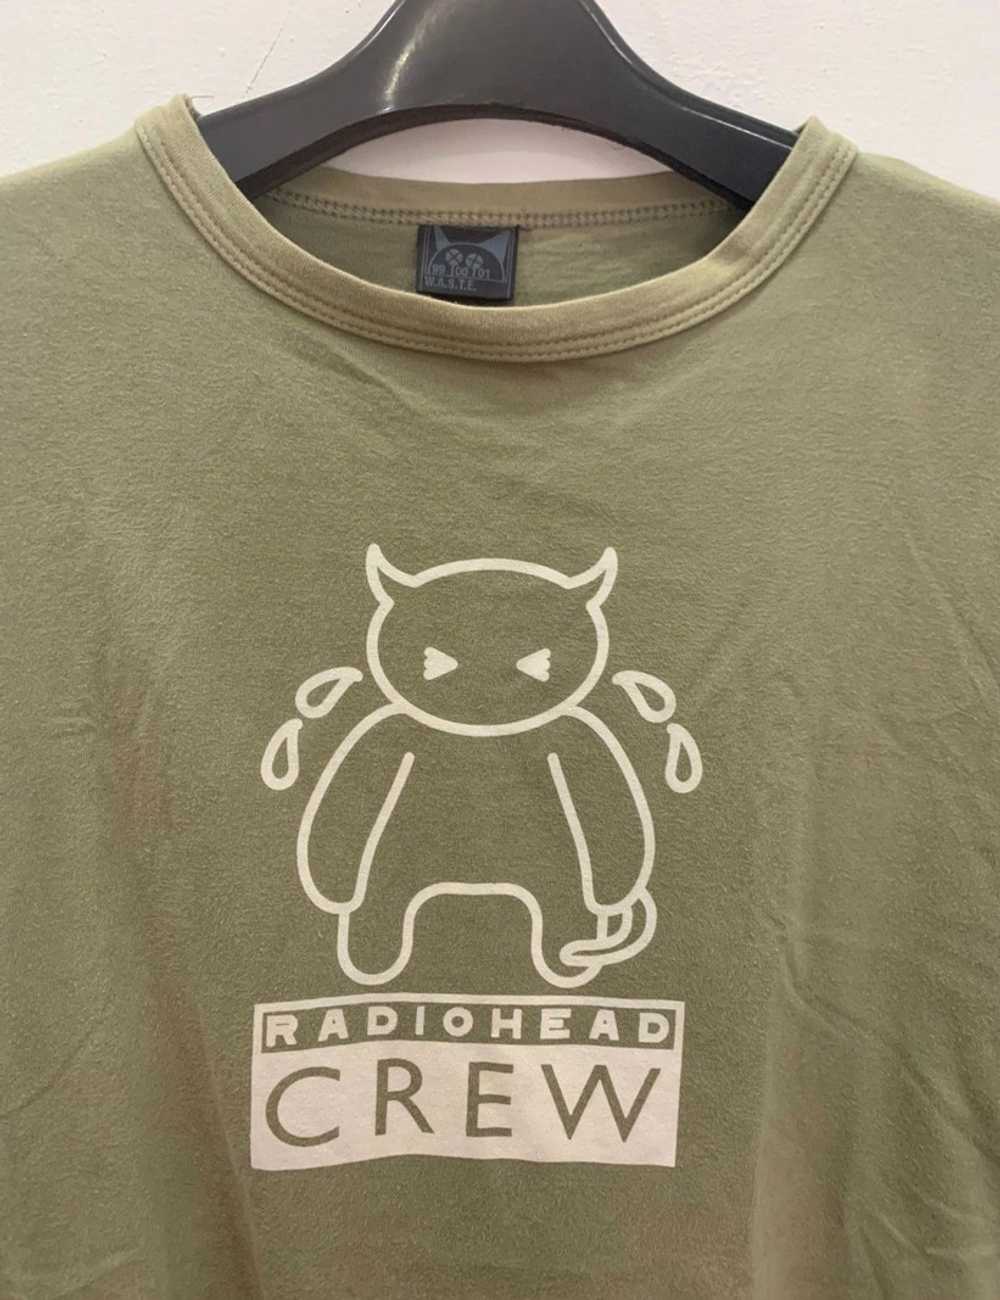 Radiohead shirt - Gem